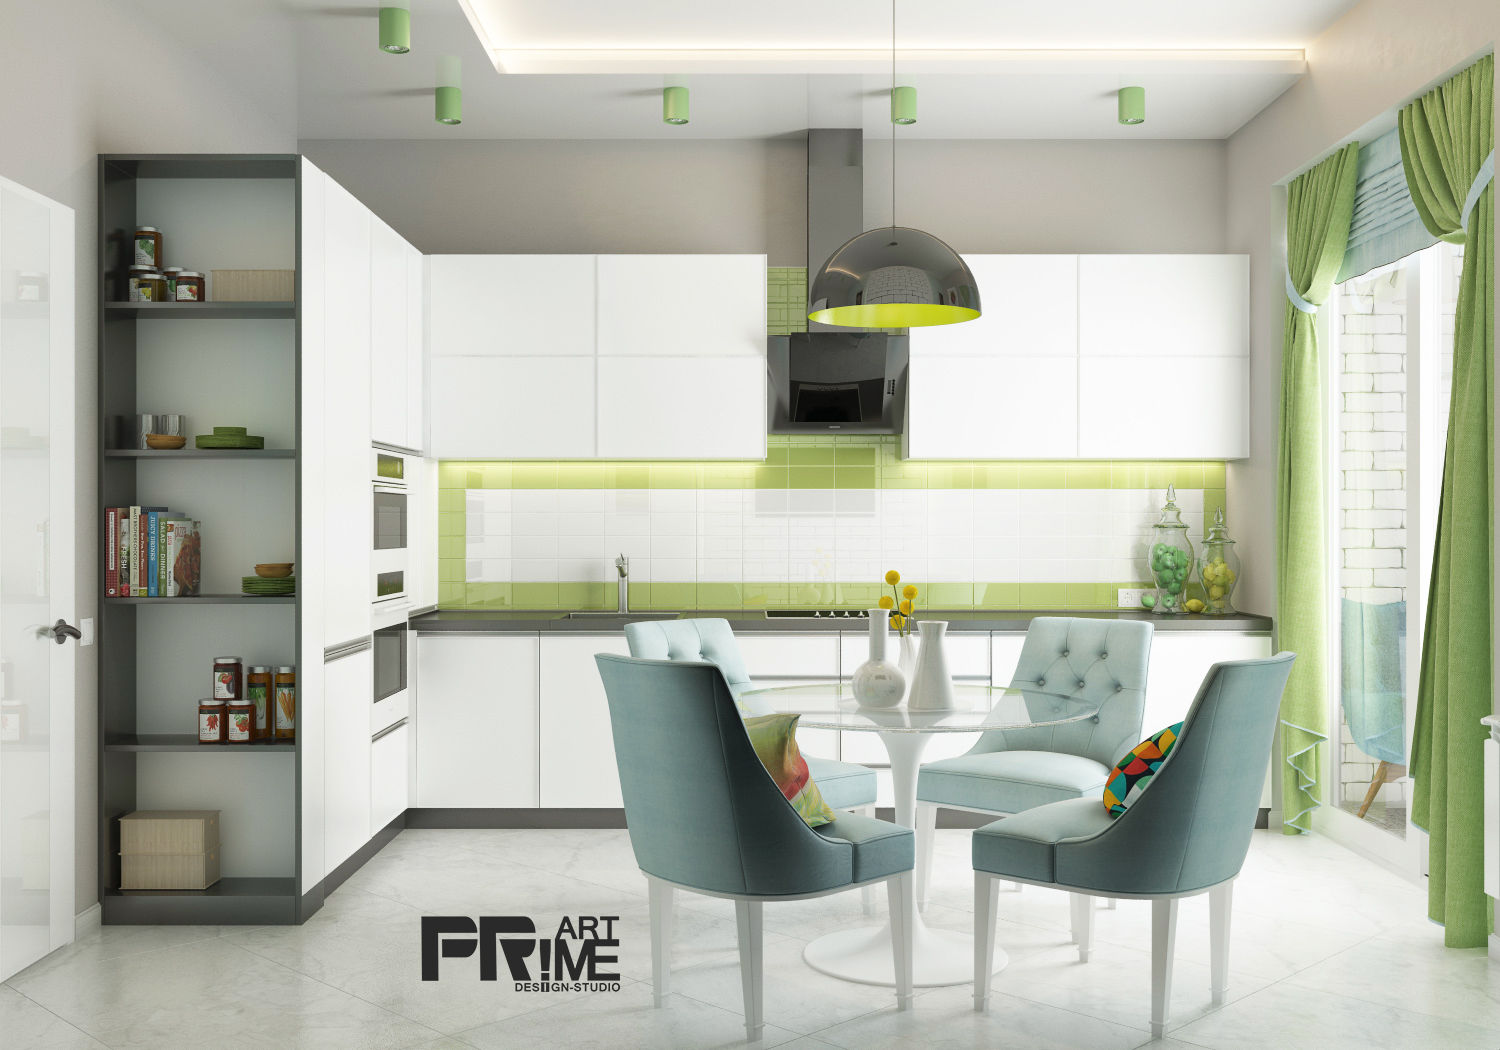 Из двухкомнатной квартиры сделали трехкомнатную и кабинет-гостевая!, "PRimeART" 'PRimeART' Kitchen